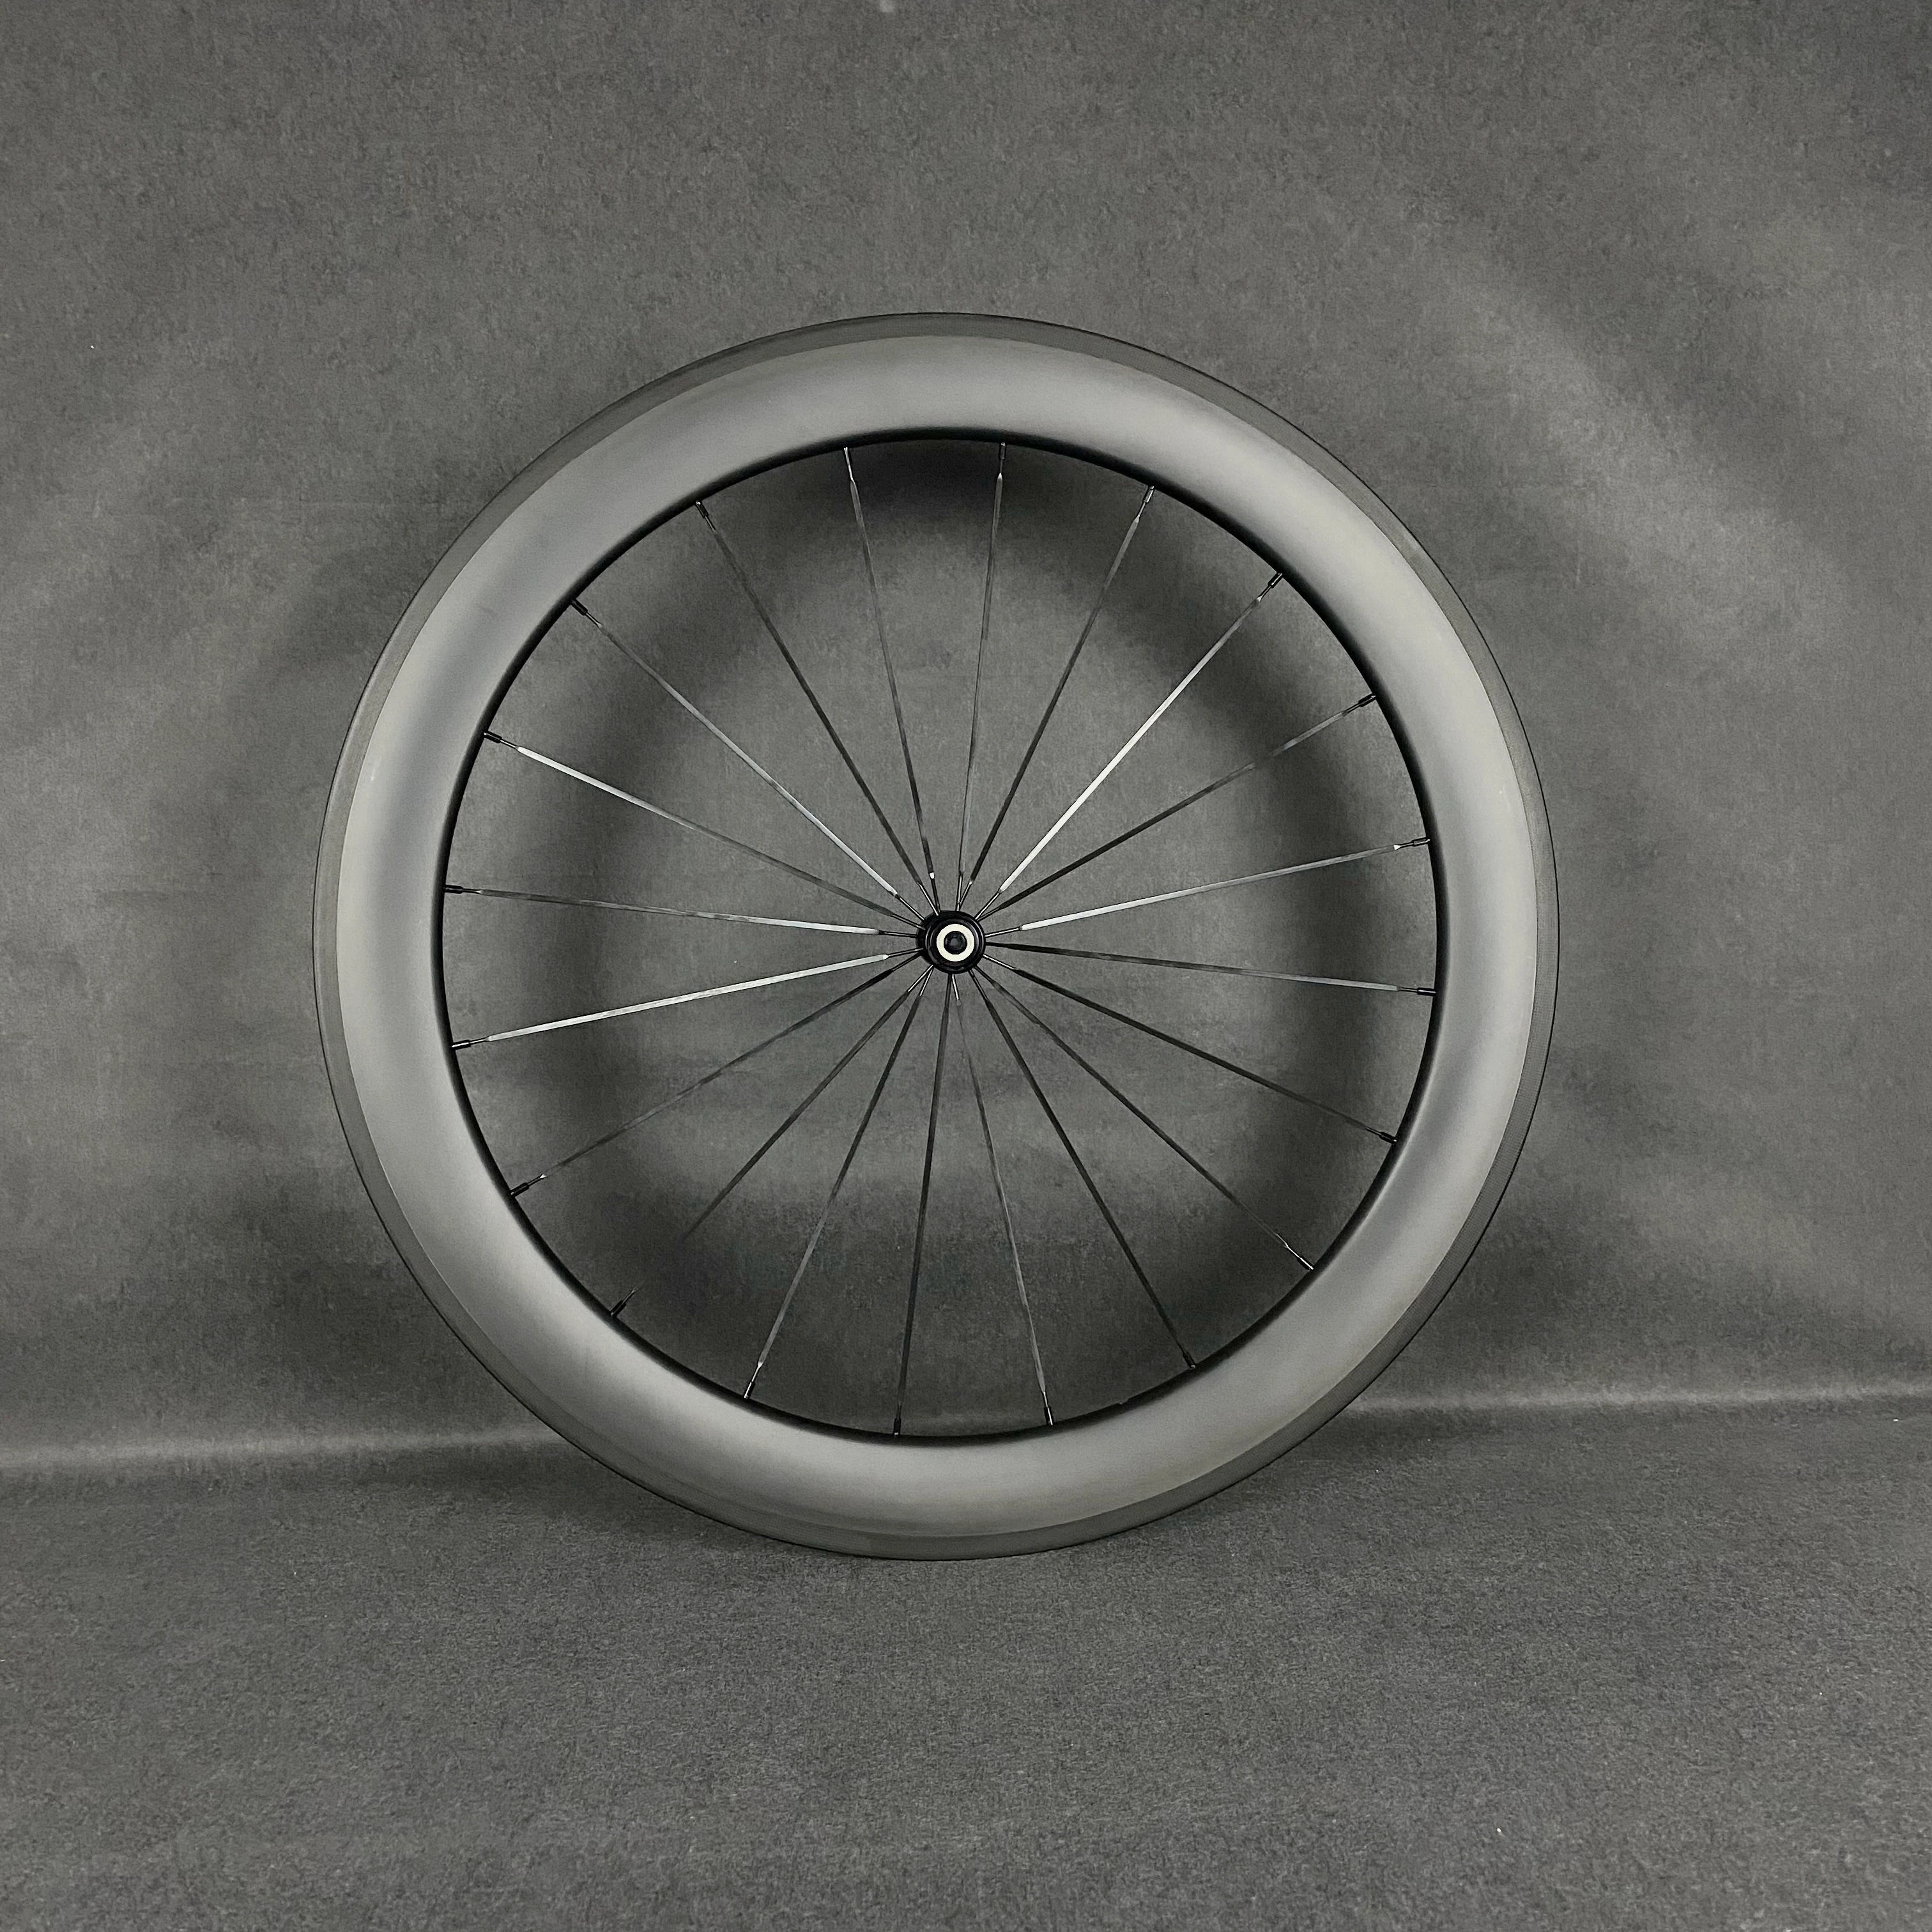 700C anglies pluošto kelių dviratį priekiniai varantys 38/50/60/88mm gylis 25mm pločio kniedė, skirta/Vamzdinės UD matinis, logotipu, gali būti pritaikytas